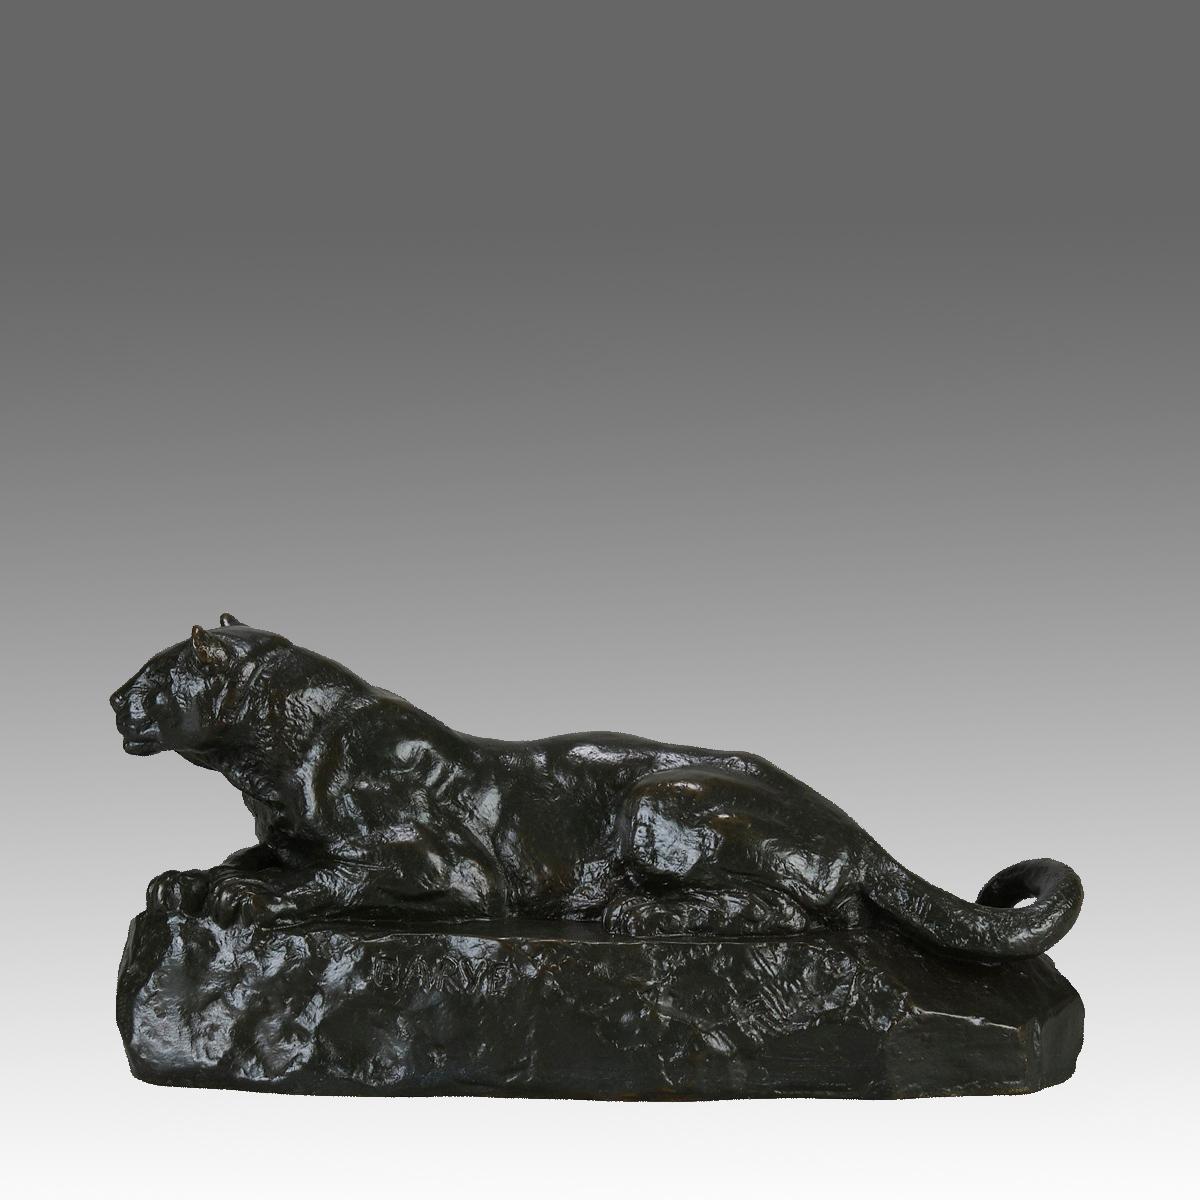 Eine hervorragende französische Animalier-Bronzestudie aus der Mitte des 19. Jahrhunderts, die einen kräftigen Panther zeigt, der auf einem naturalistischen Felsen ruht. Die Oberfläche der Bronze hat eine hervorragende herbstliche Patina und sehr